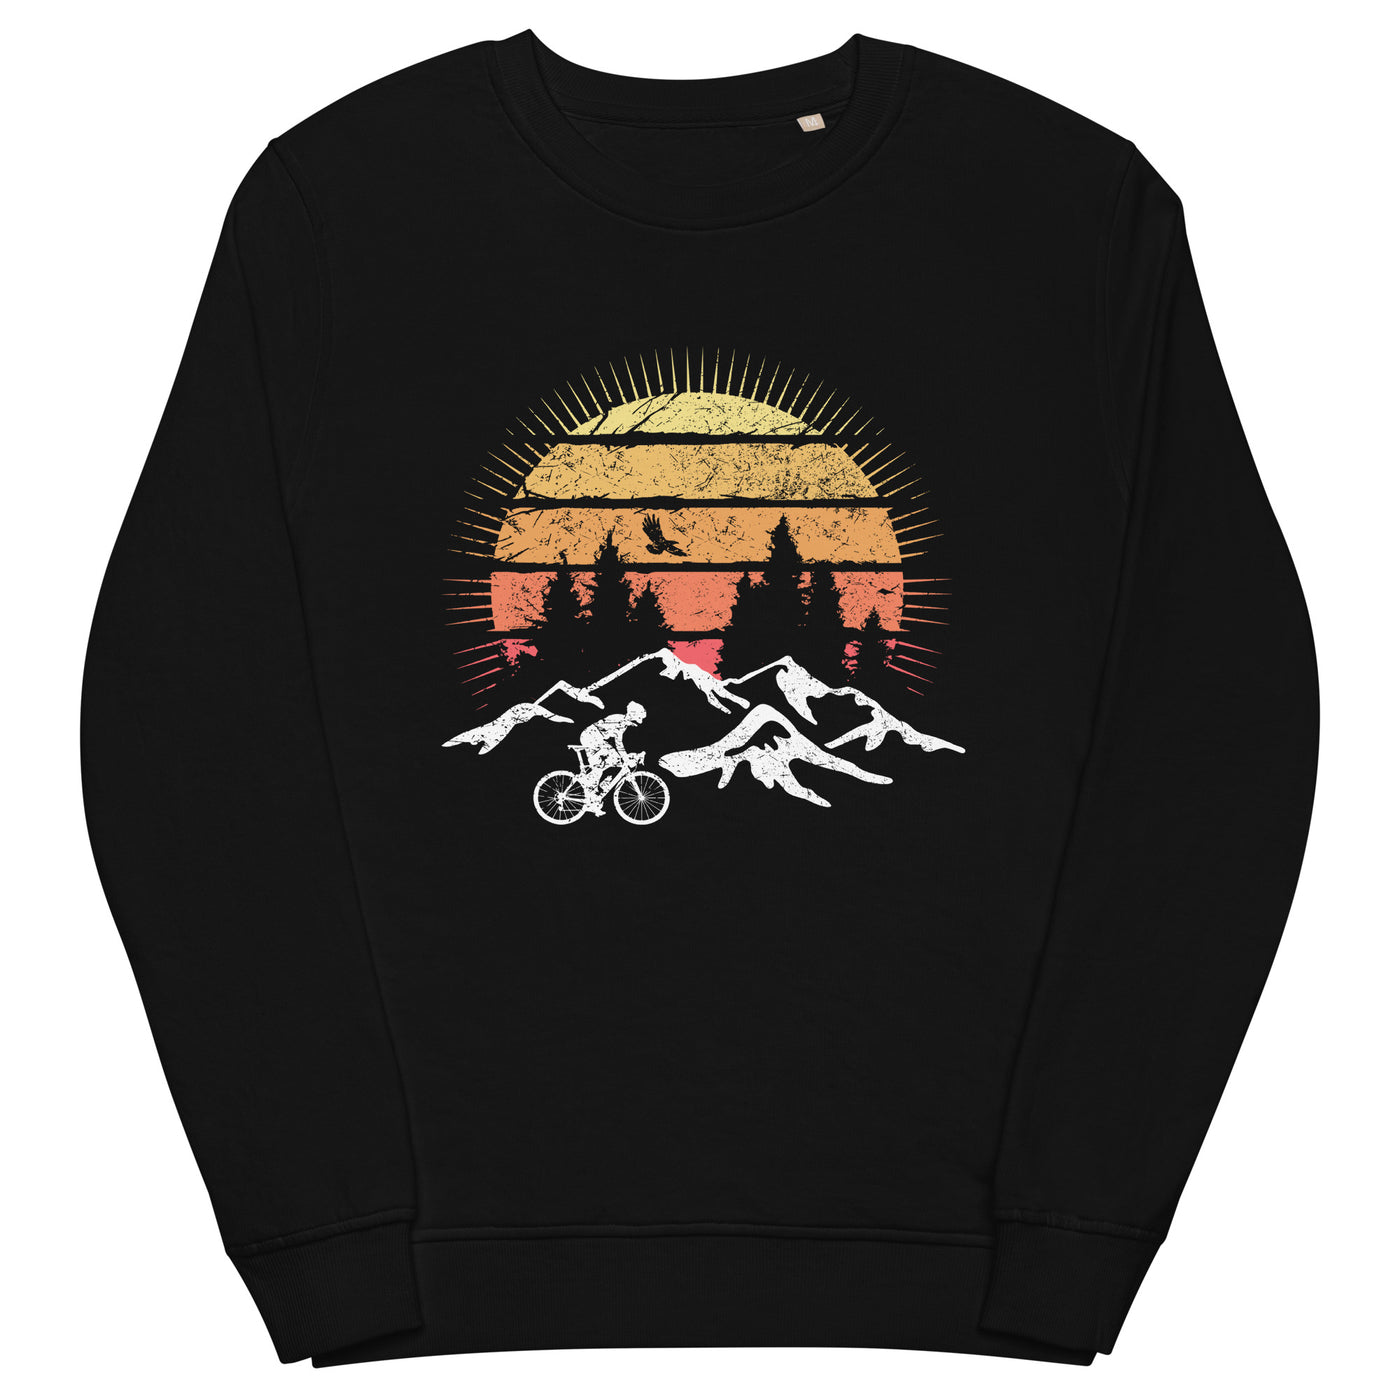 Radfahrer und Sonne Vintage - Unisex Premium Organic Sweatshirt fahrrad mountainbike Schwarz